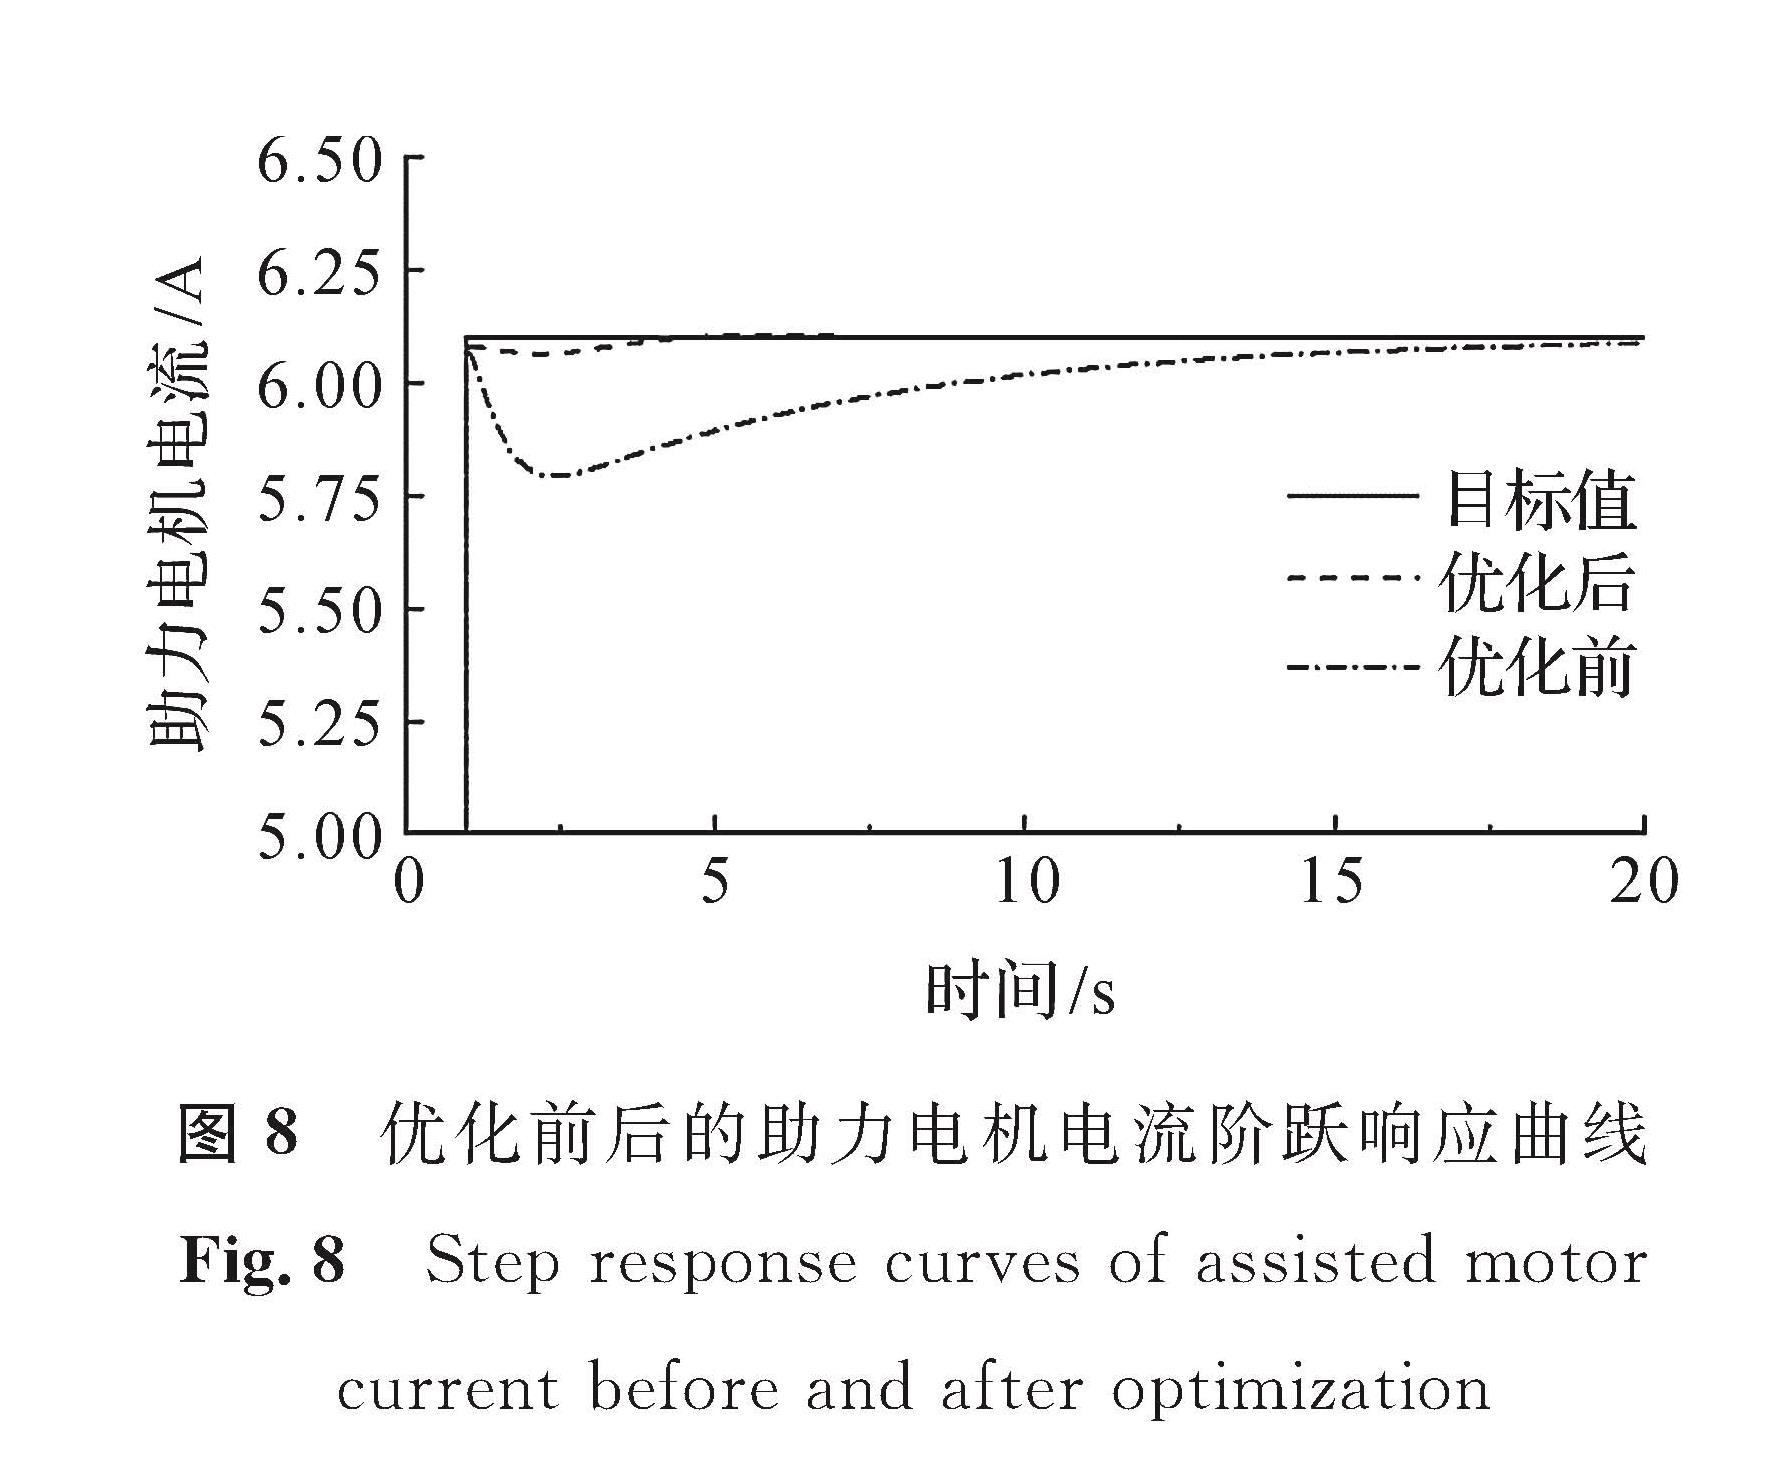 图8 优化前后的助力电机电流阶跃响应曲线<br/>Fig.8 Step response curves of assisted motor current before and after optimization